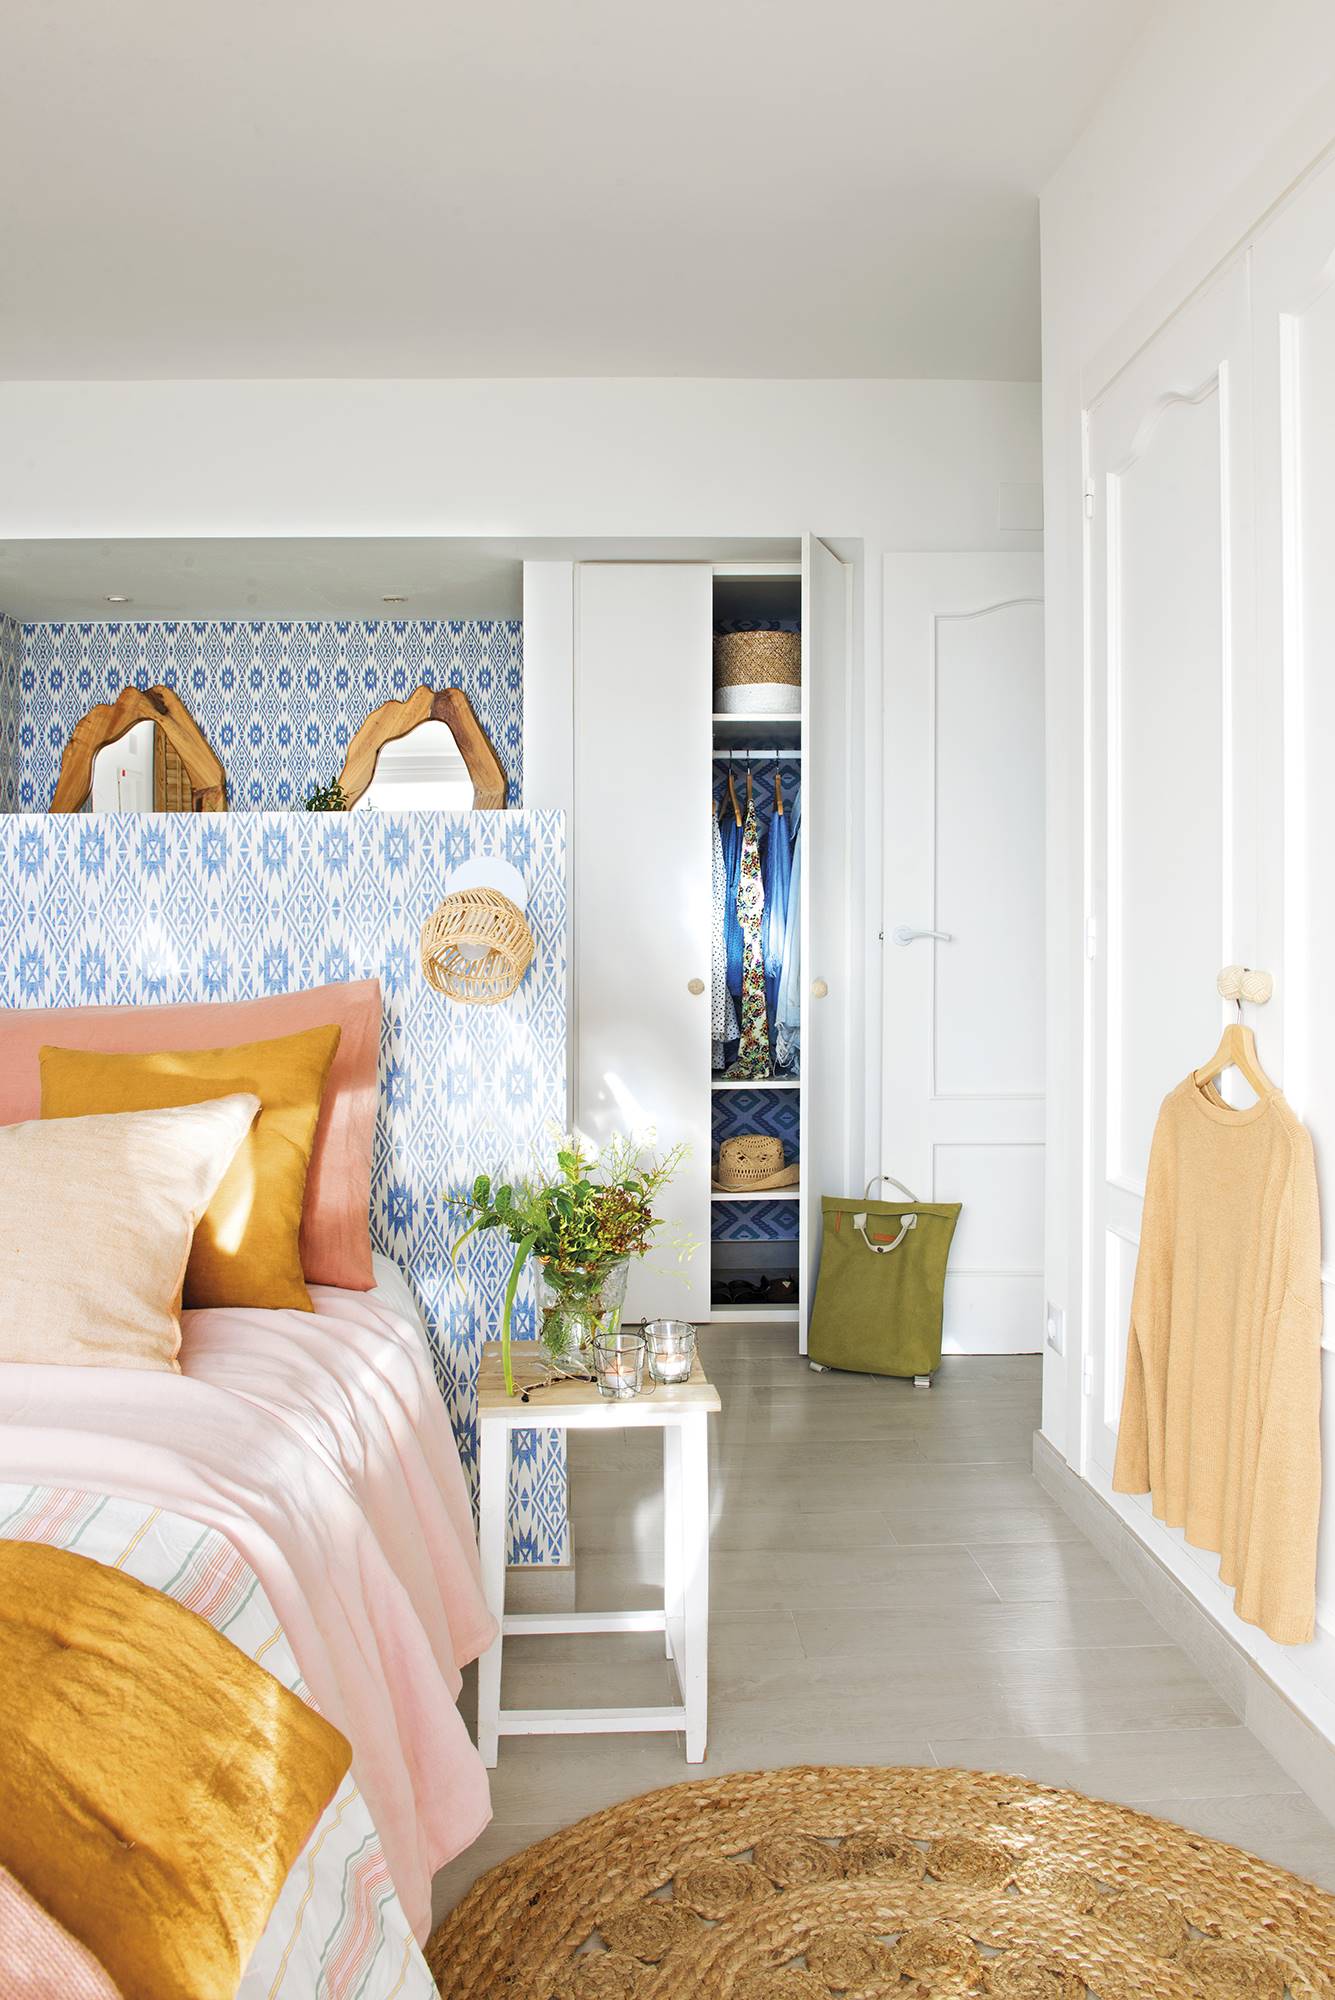 Dormitorio con cama en medio y zona de tocador al fondo con papel pintado con motivos azules